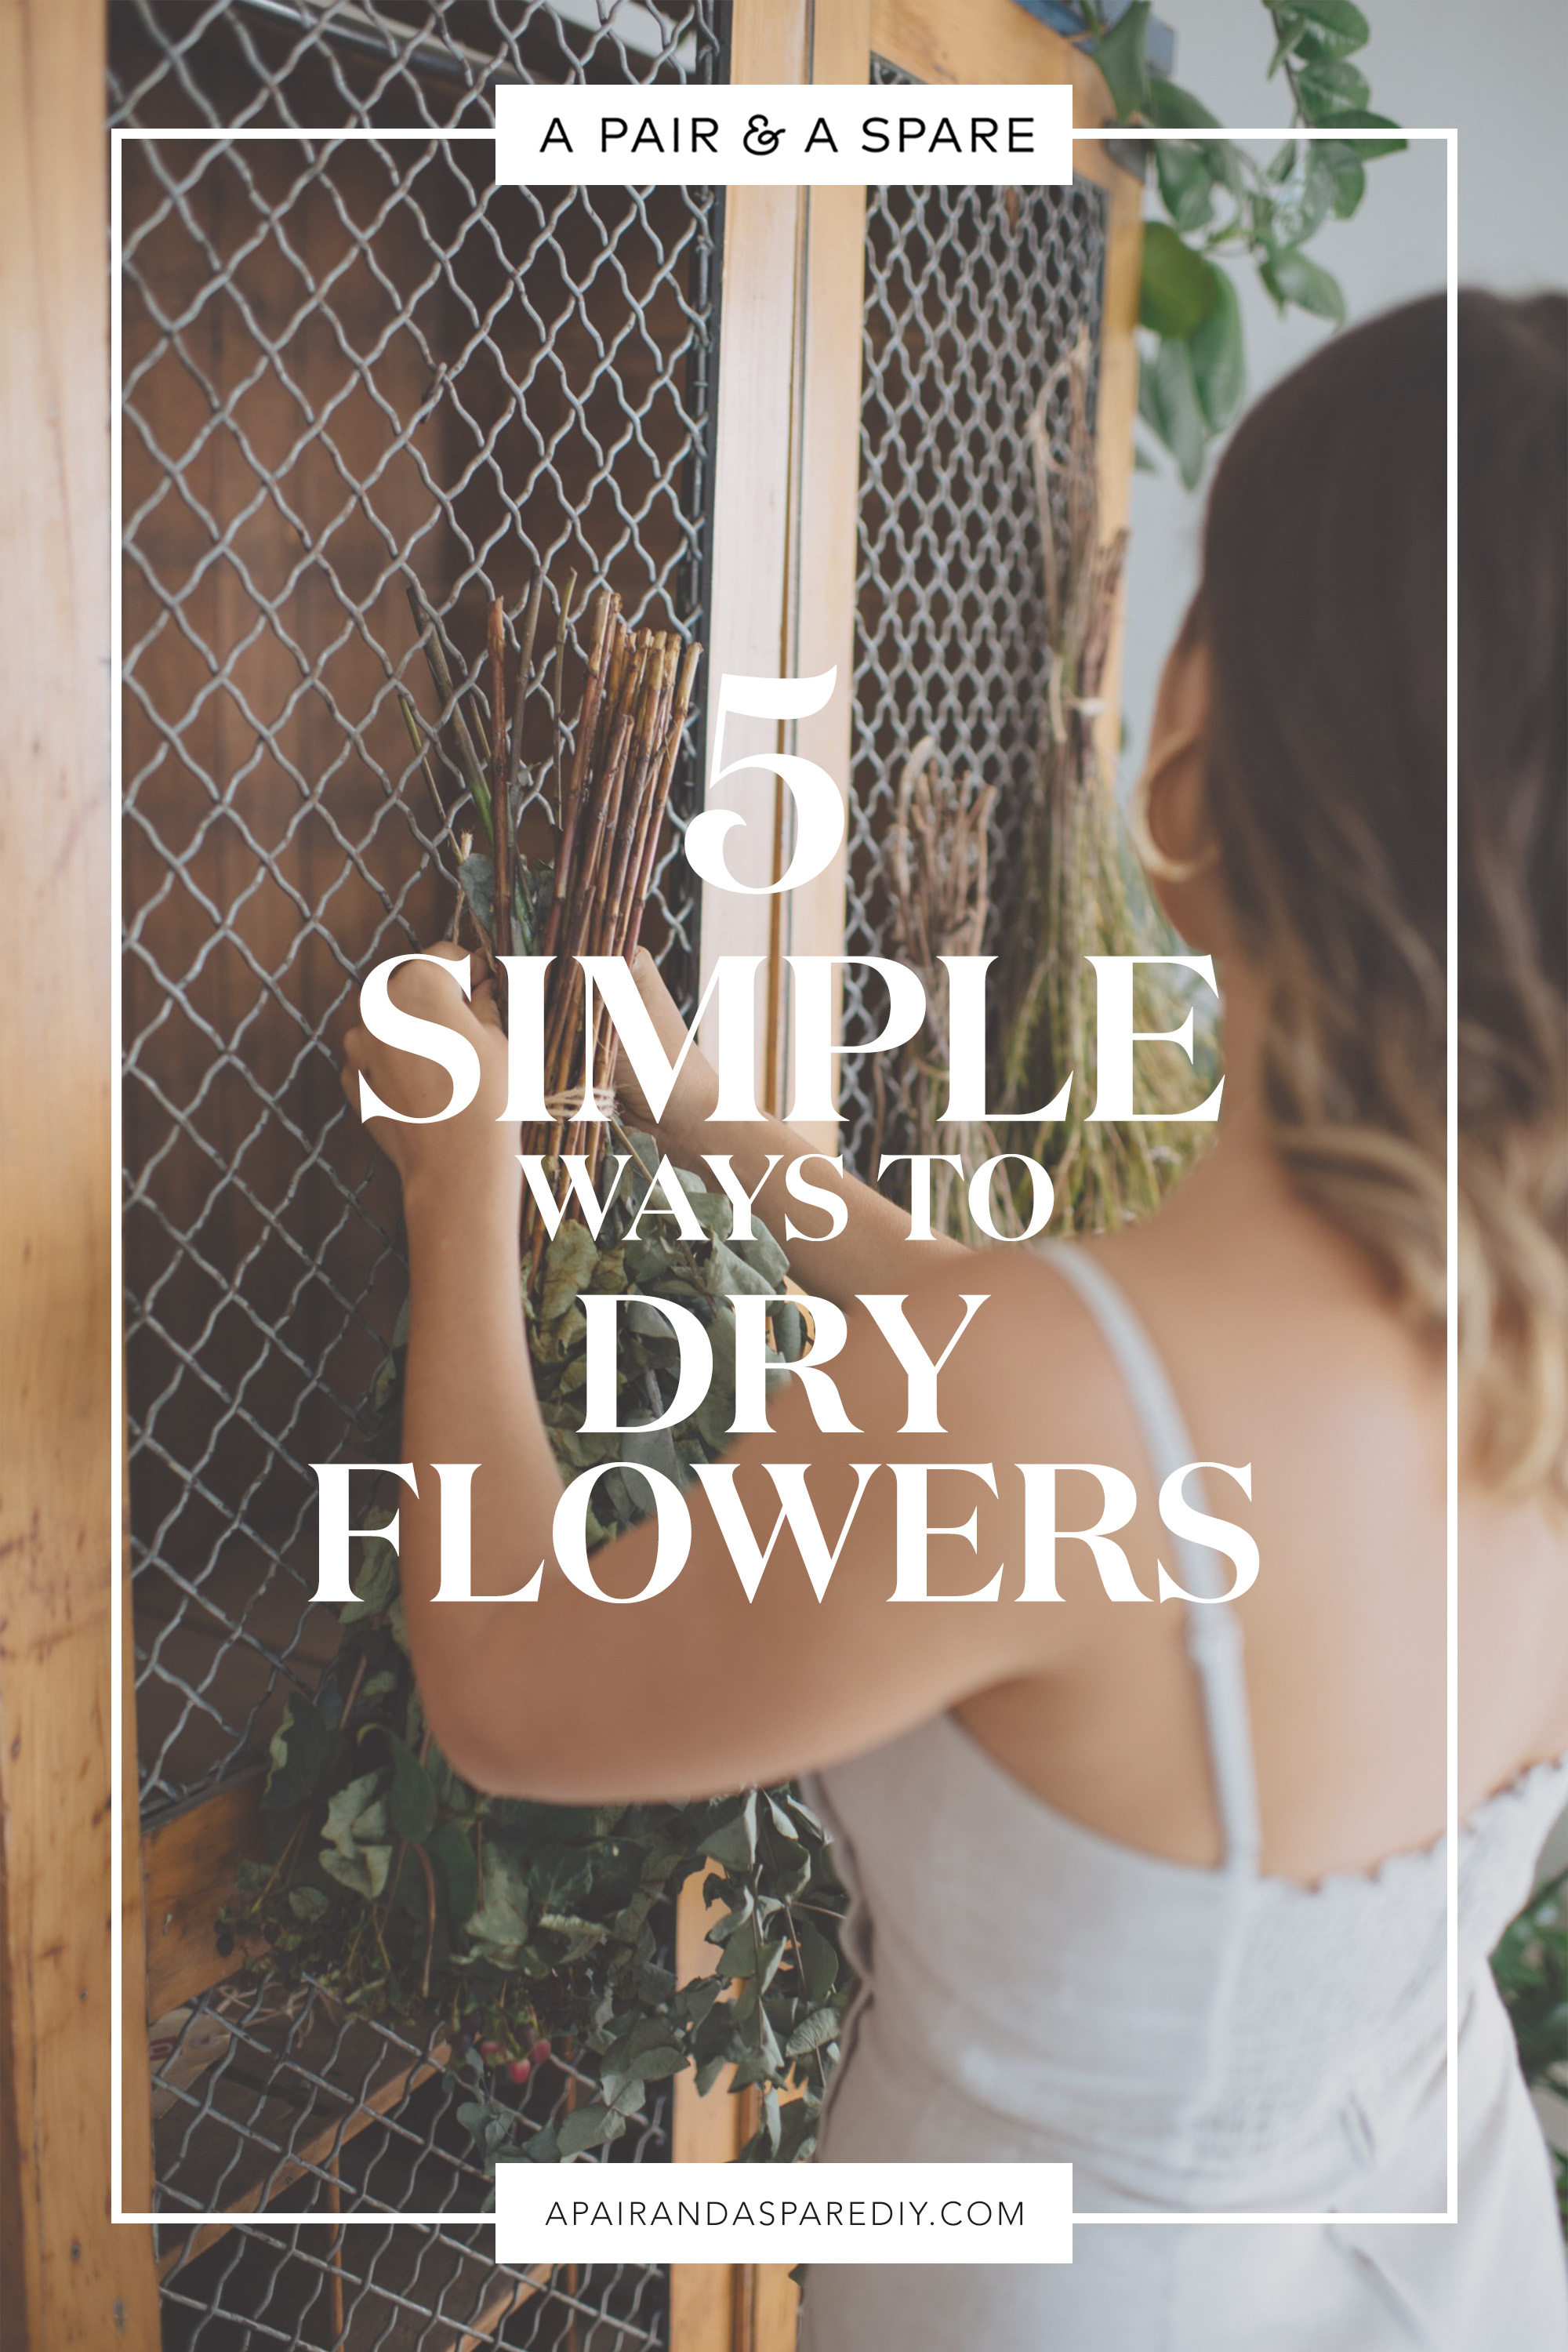 Dry Flowers